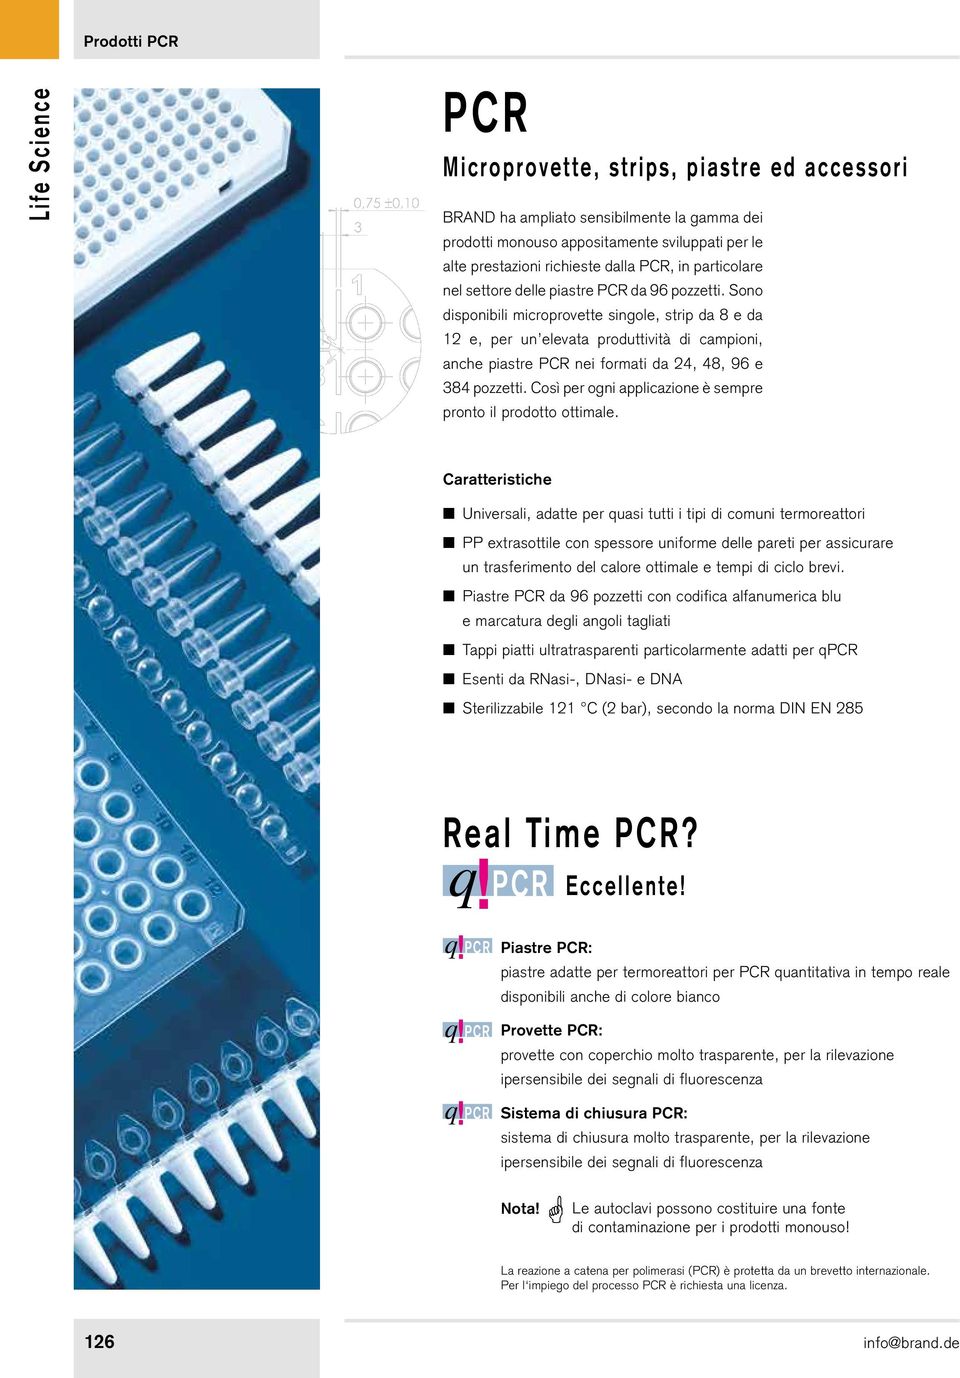 Sono disponibili microprovette singole, strip da 8 e da 12 e, per un elevata produttività di campioni, anche piastre PCR nei formati da 24, 48, 96 e 384 pozzetti.